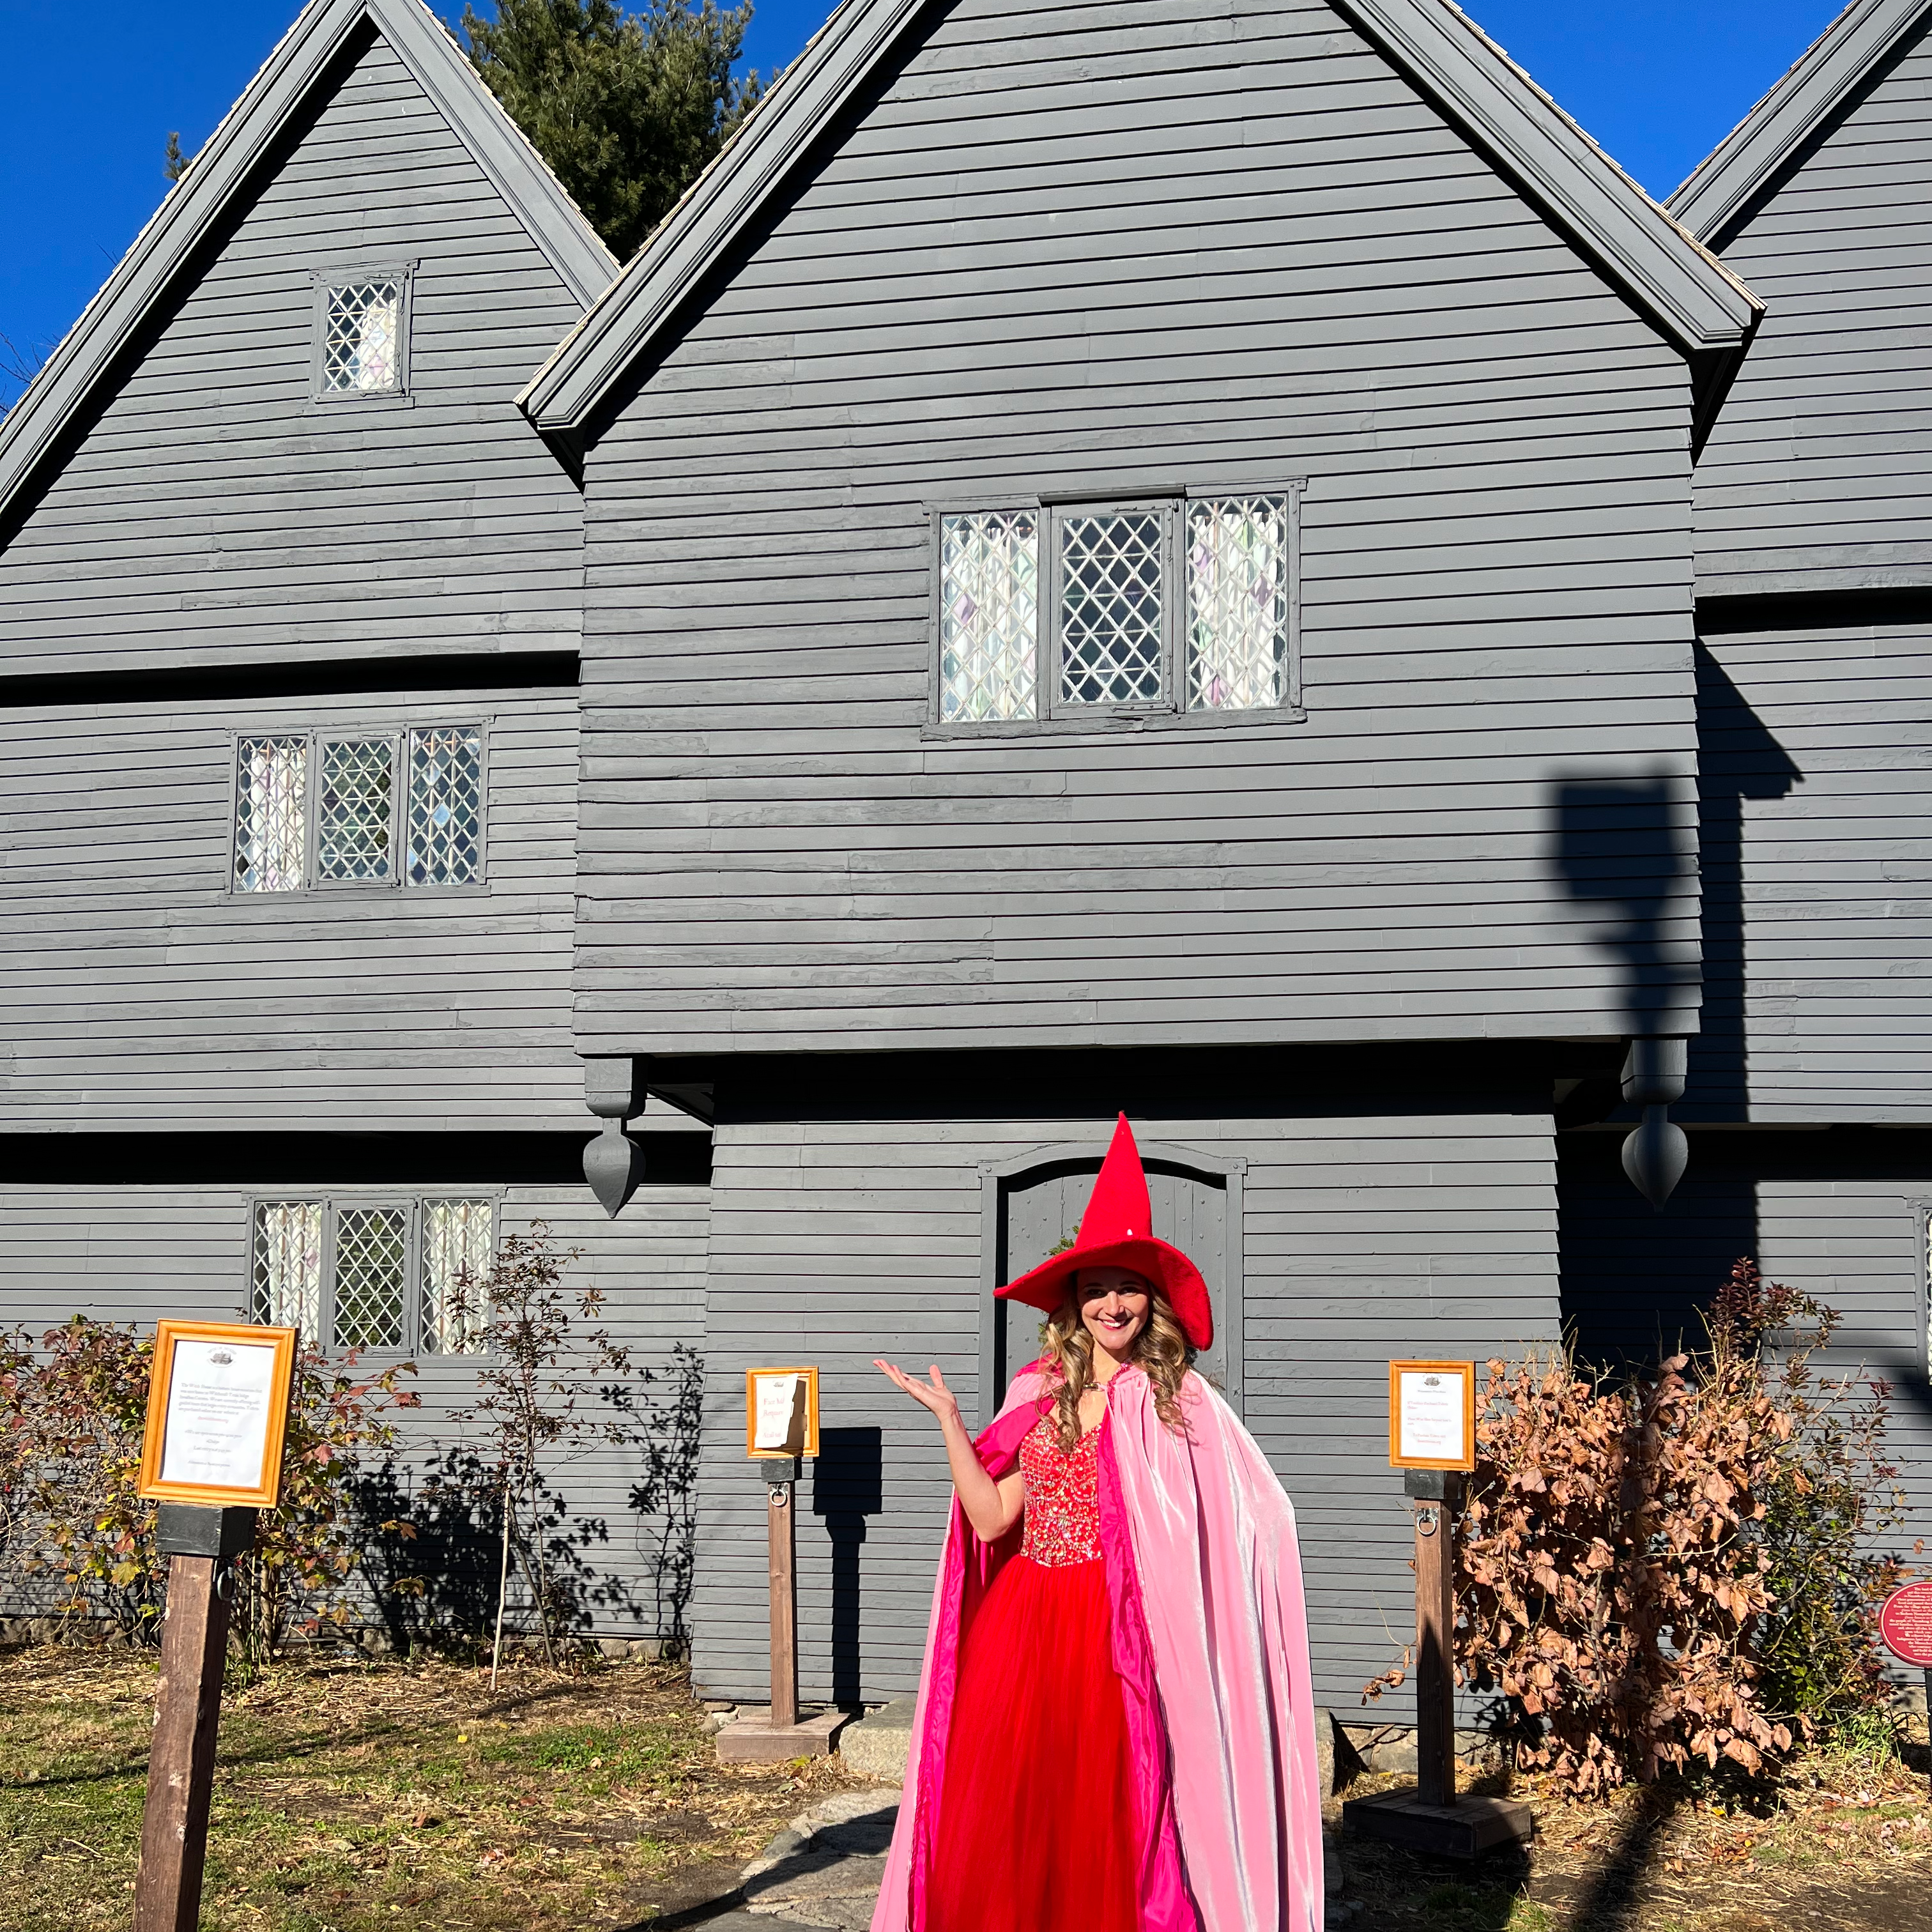 Witch House Salem, MA The Good Witch of Salem